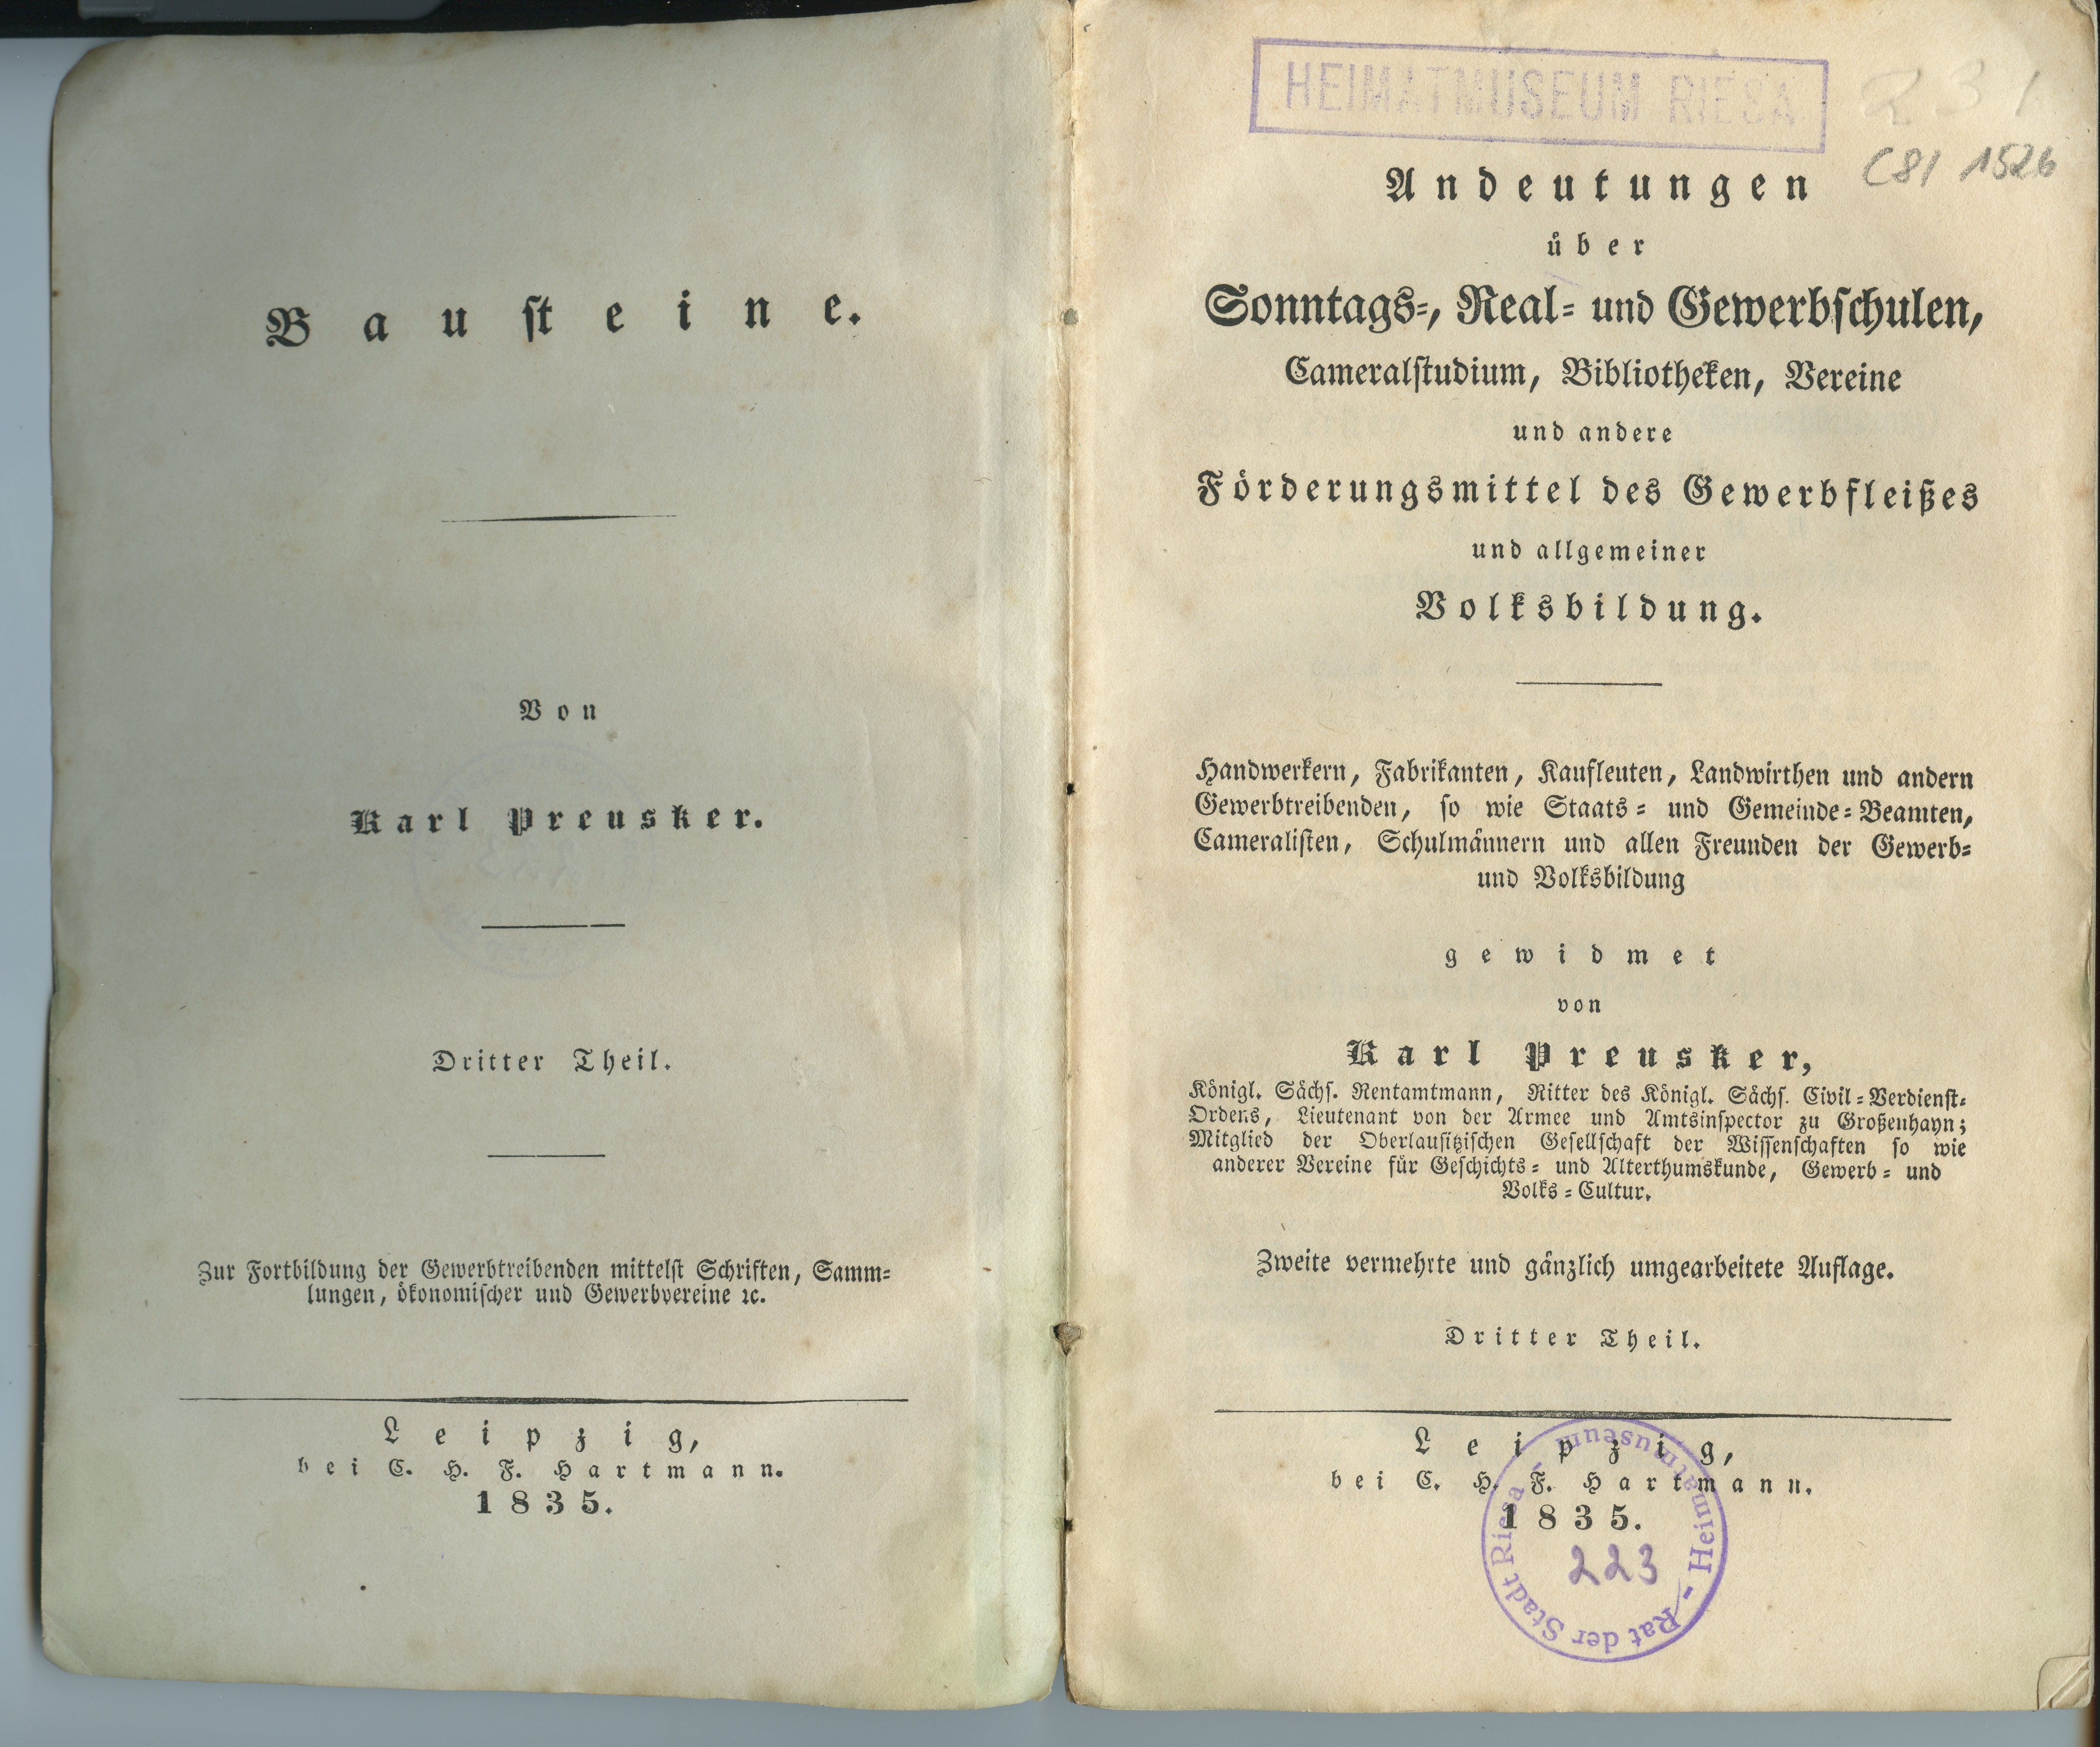 Preusker, Karl: Andeutungen über Sonntags-, Real- und Gewerbschulen [...], Teil 3, 2. Auflage 1835 (Museum Alte Lateinschule CC BY-NC-SA)